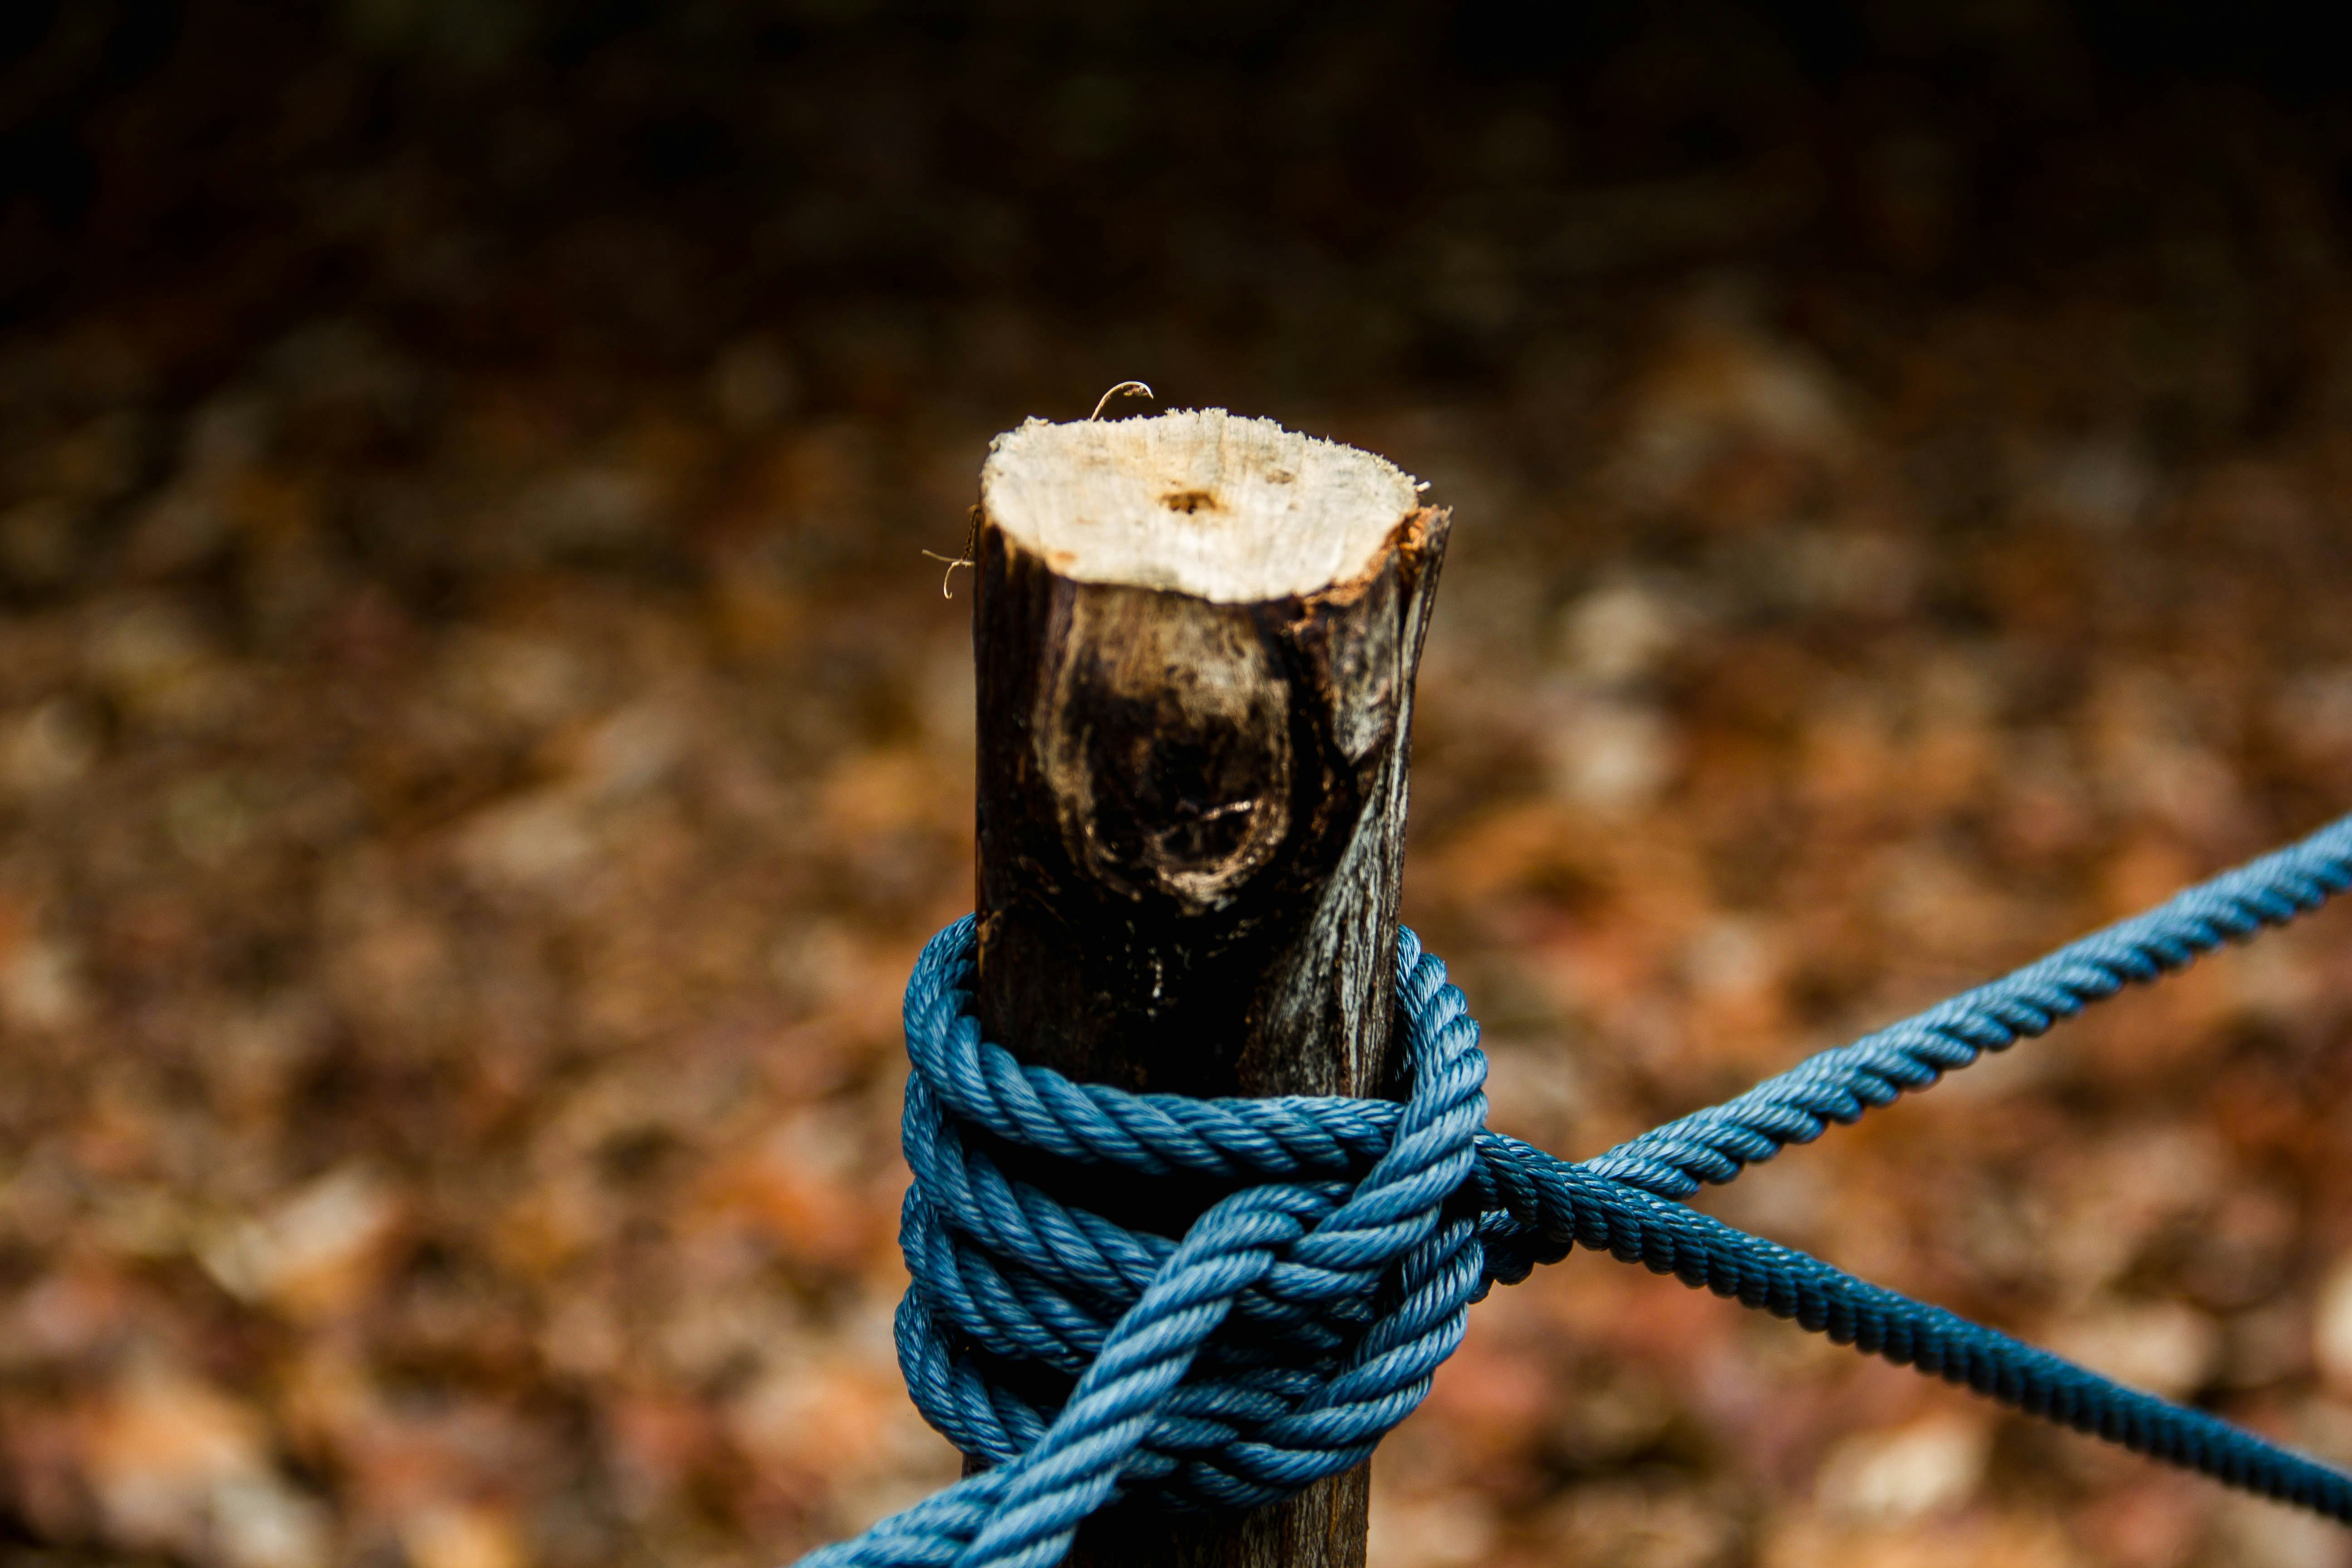 brown rope tie on wood log